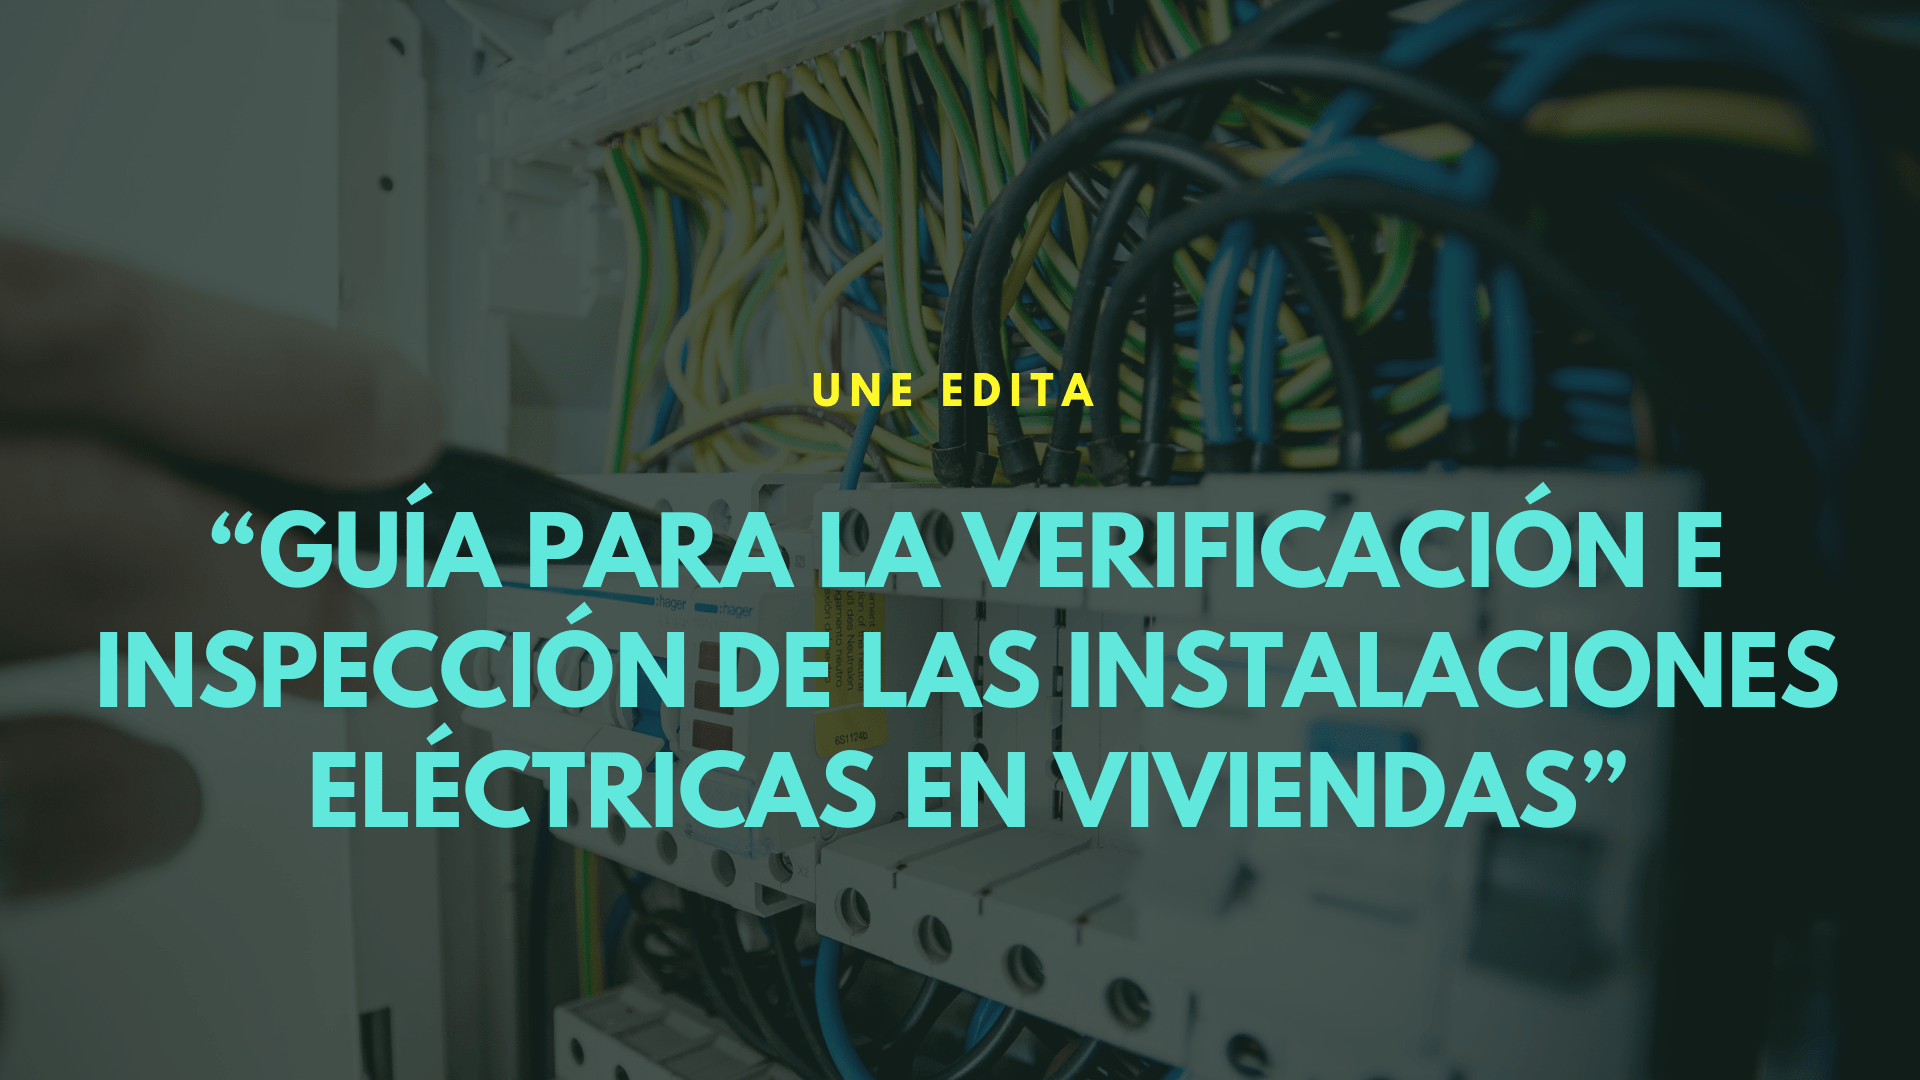 UNE publica la guía para inspección de instalaciones eléctricas en viviendas